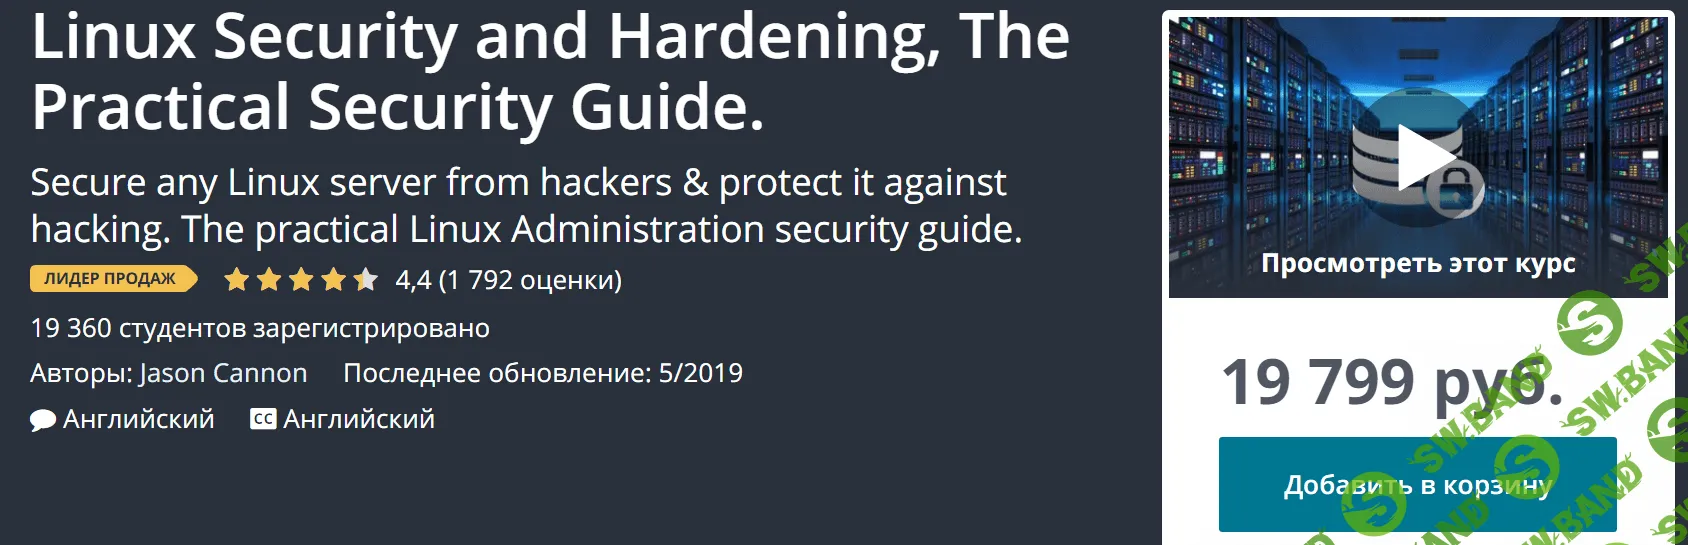 [Udemy] Безопасность и защита Linux, Практическое руководство по безопасности (2019)